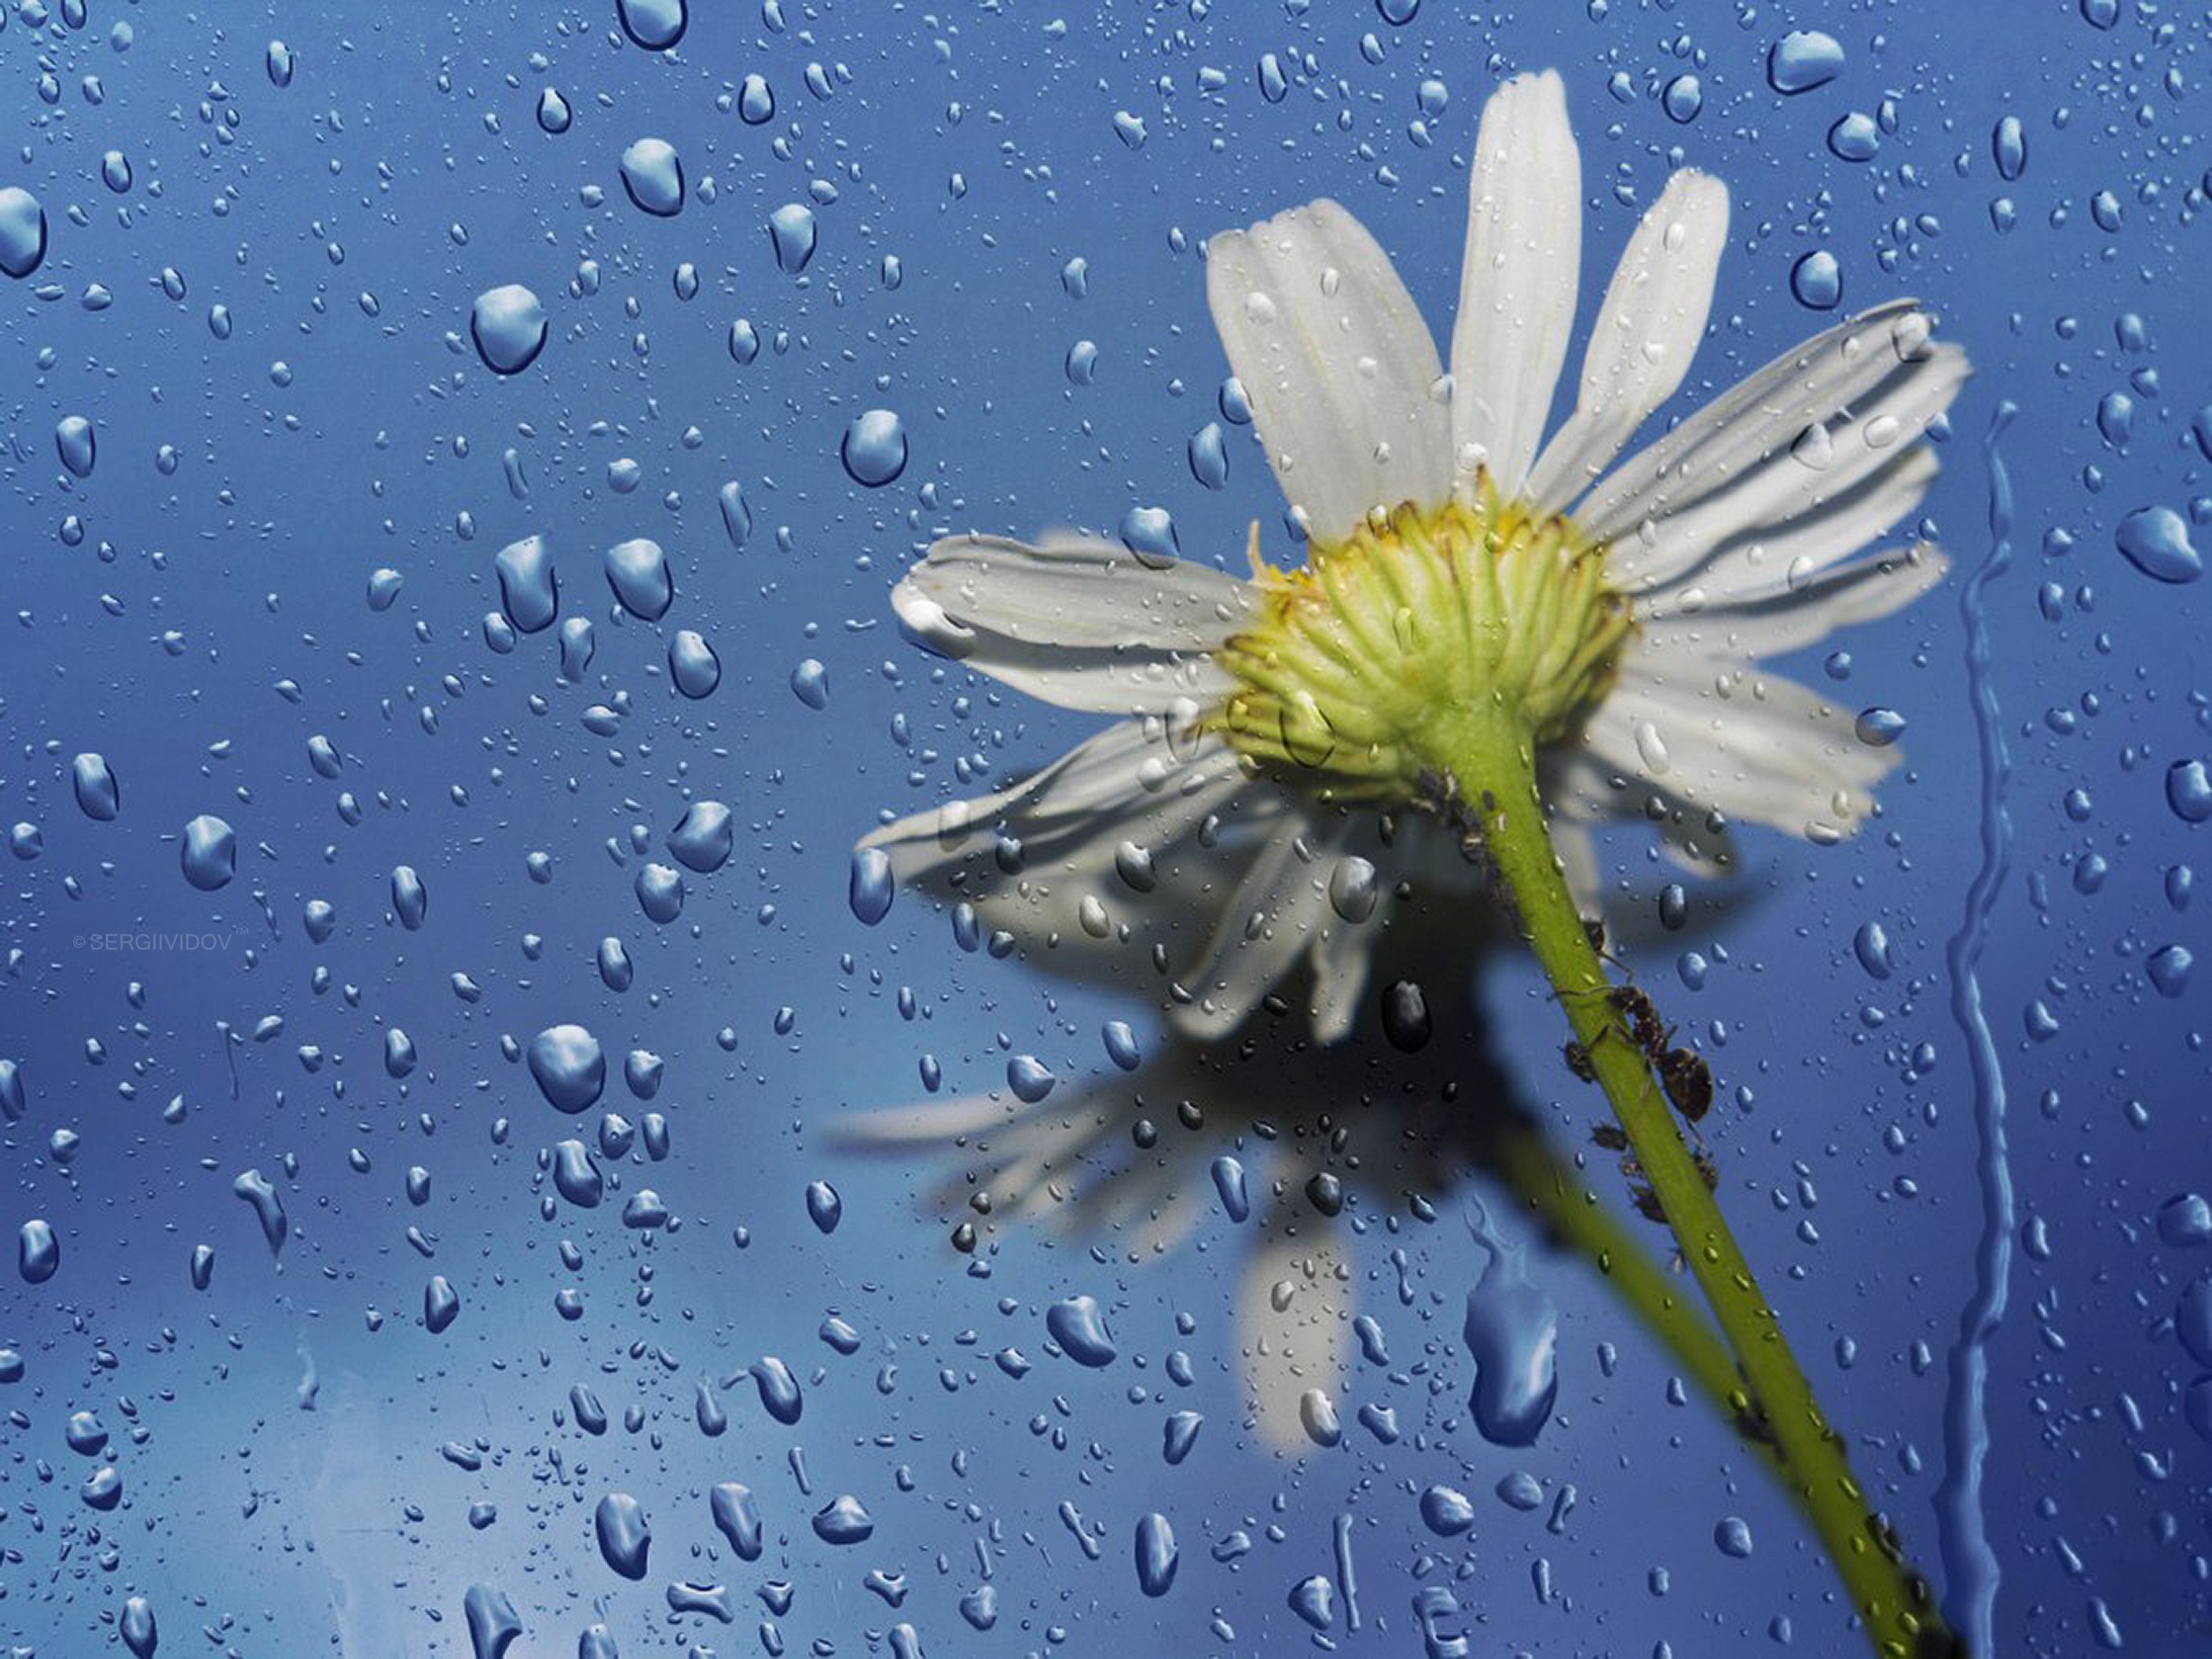 ромашки, цветы, капли дождя, Sergii Vidov